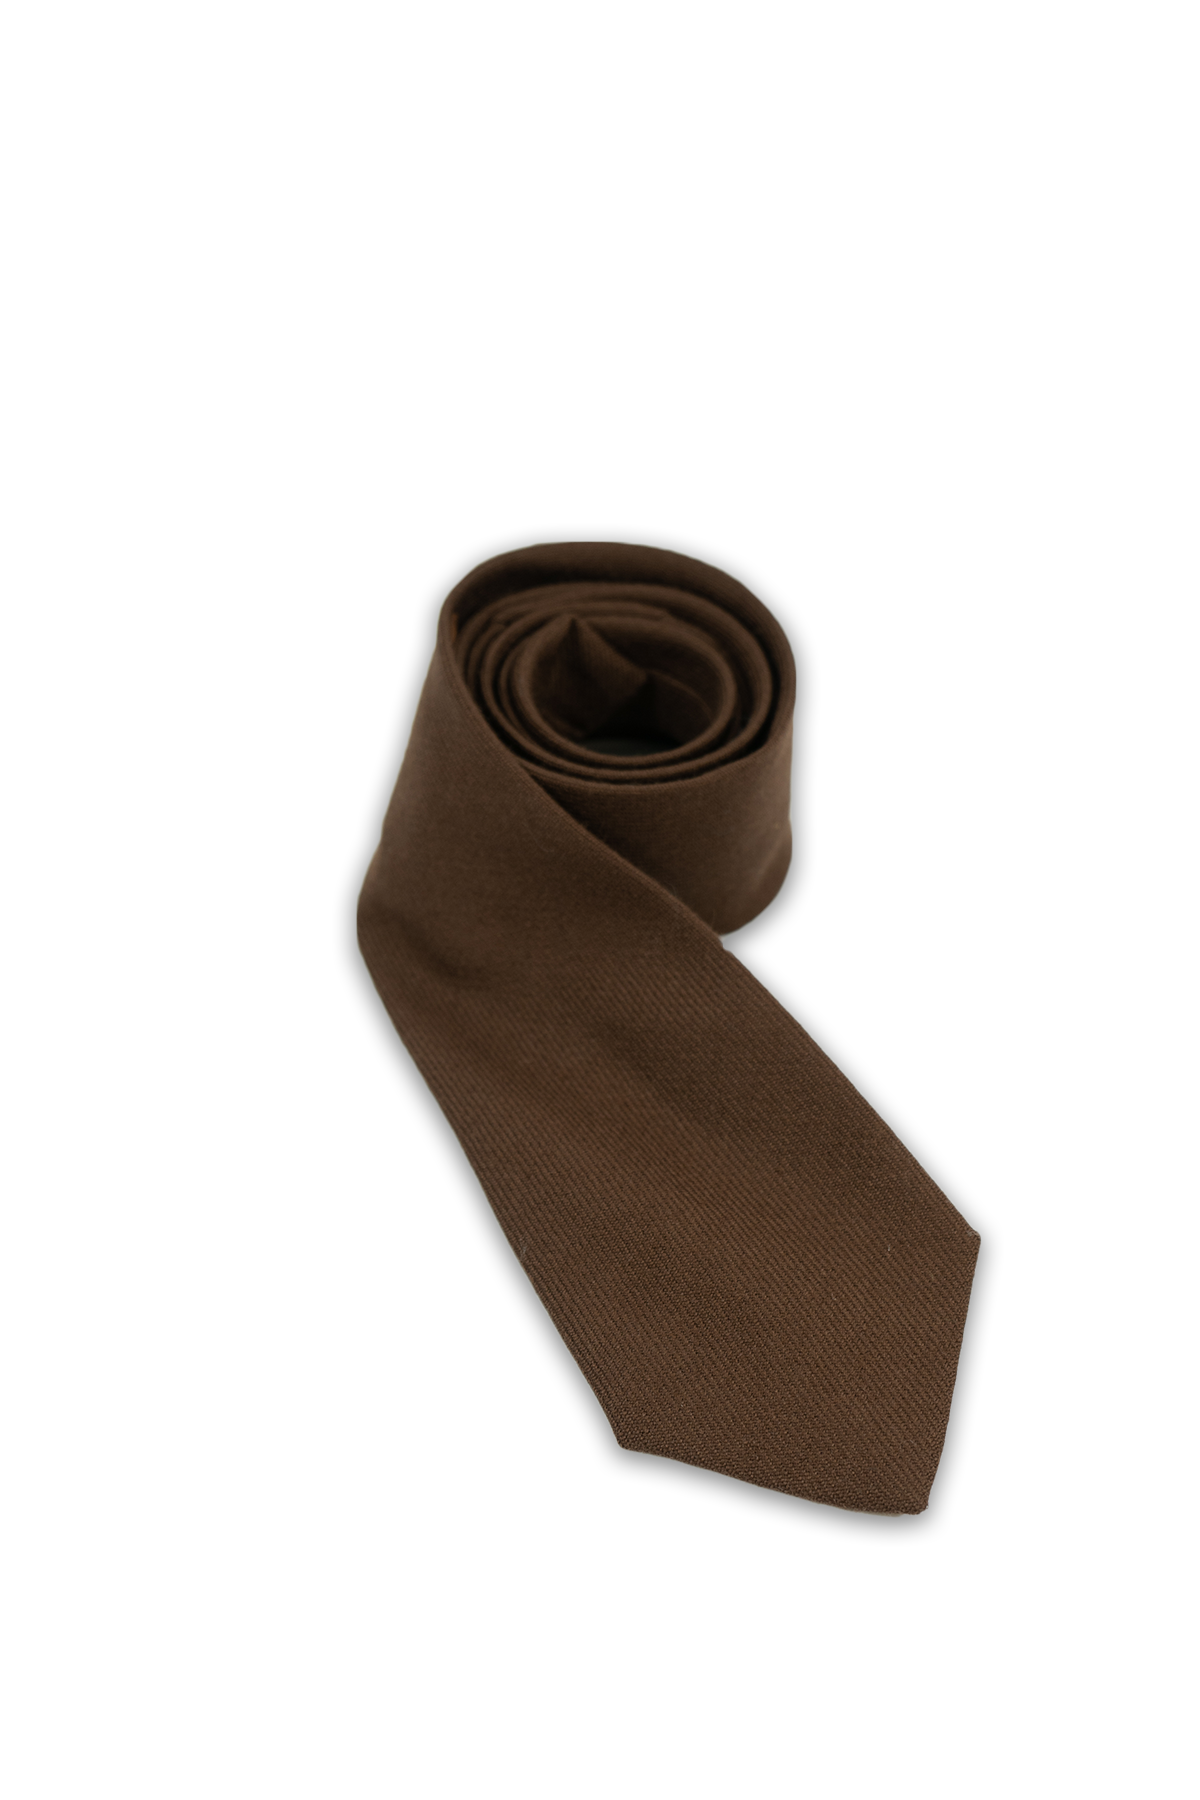 Brown Muted Wool Tie (House of Edgar)